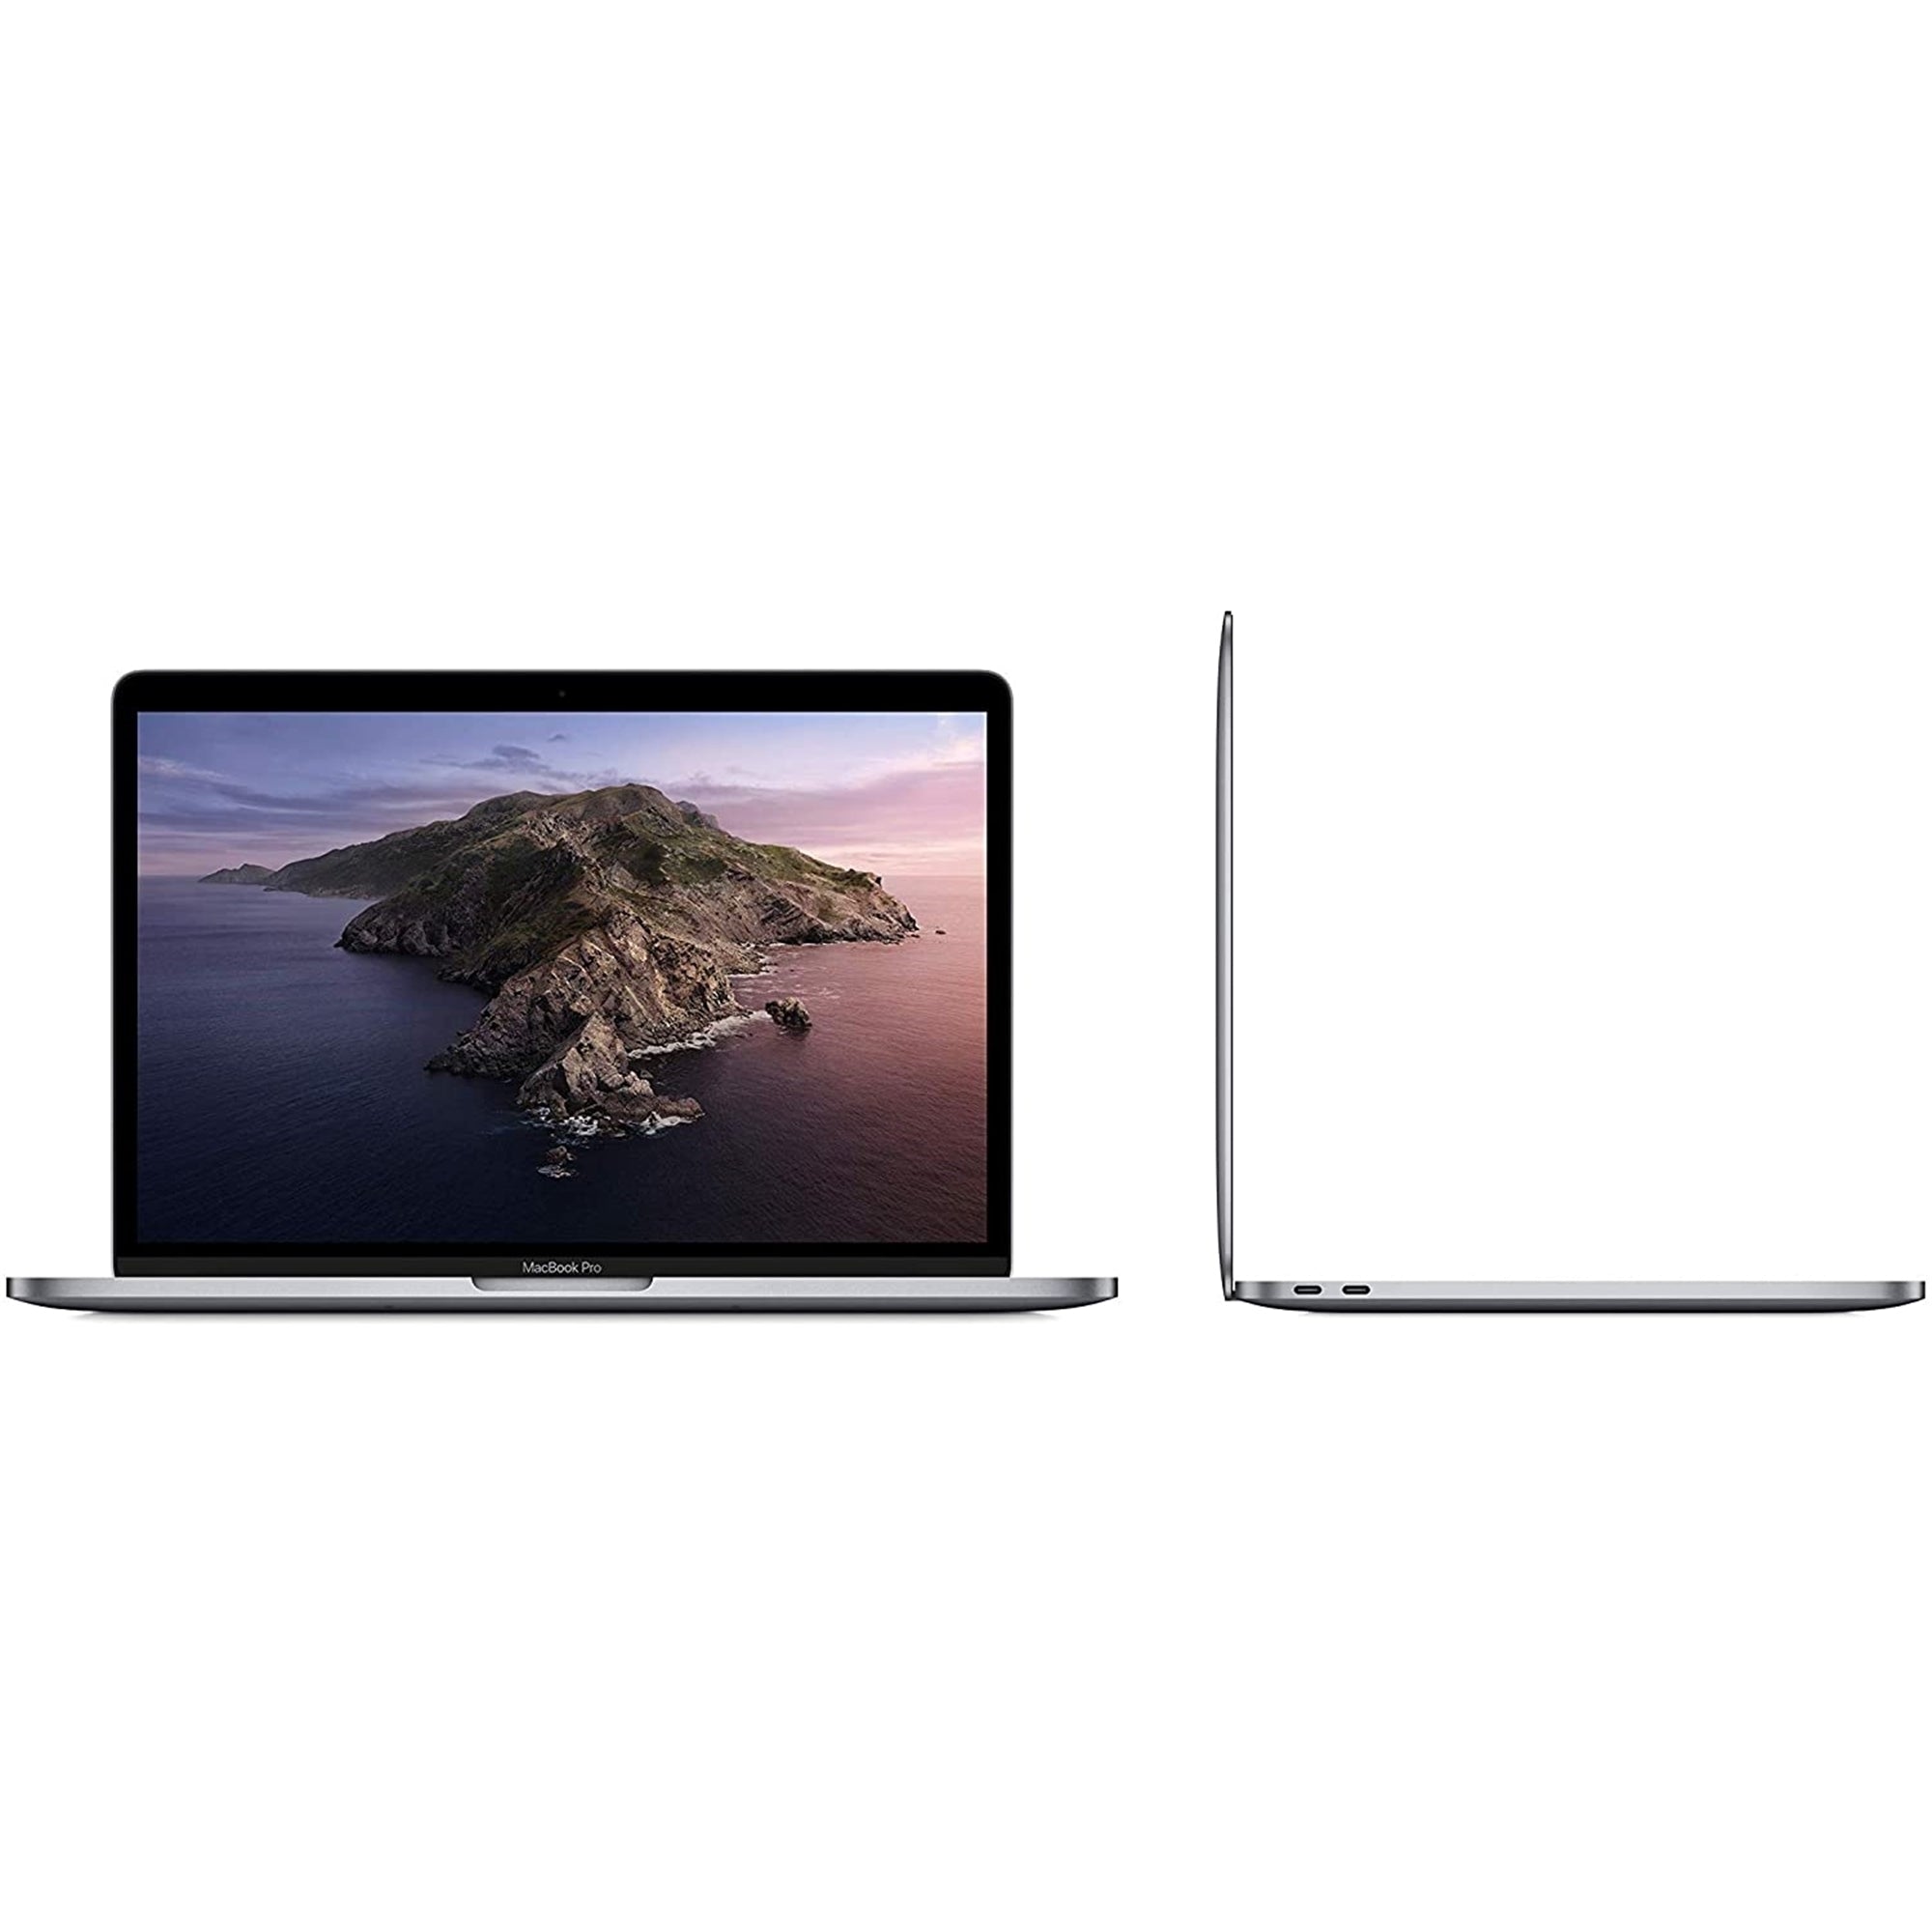 MacBook Air 13インチ 2019 i5 8GB 128GB